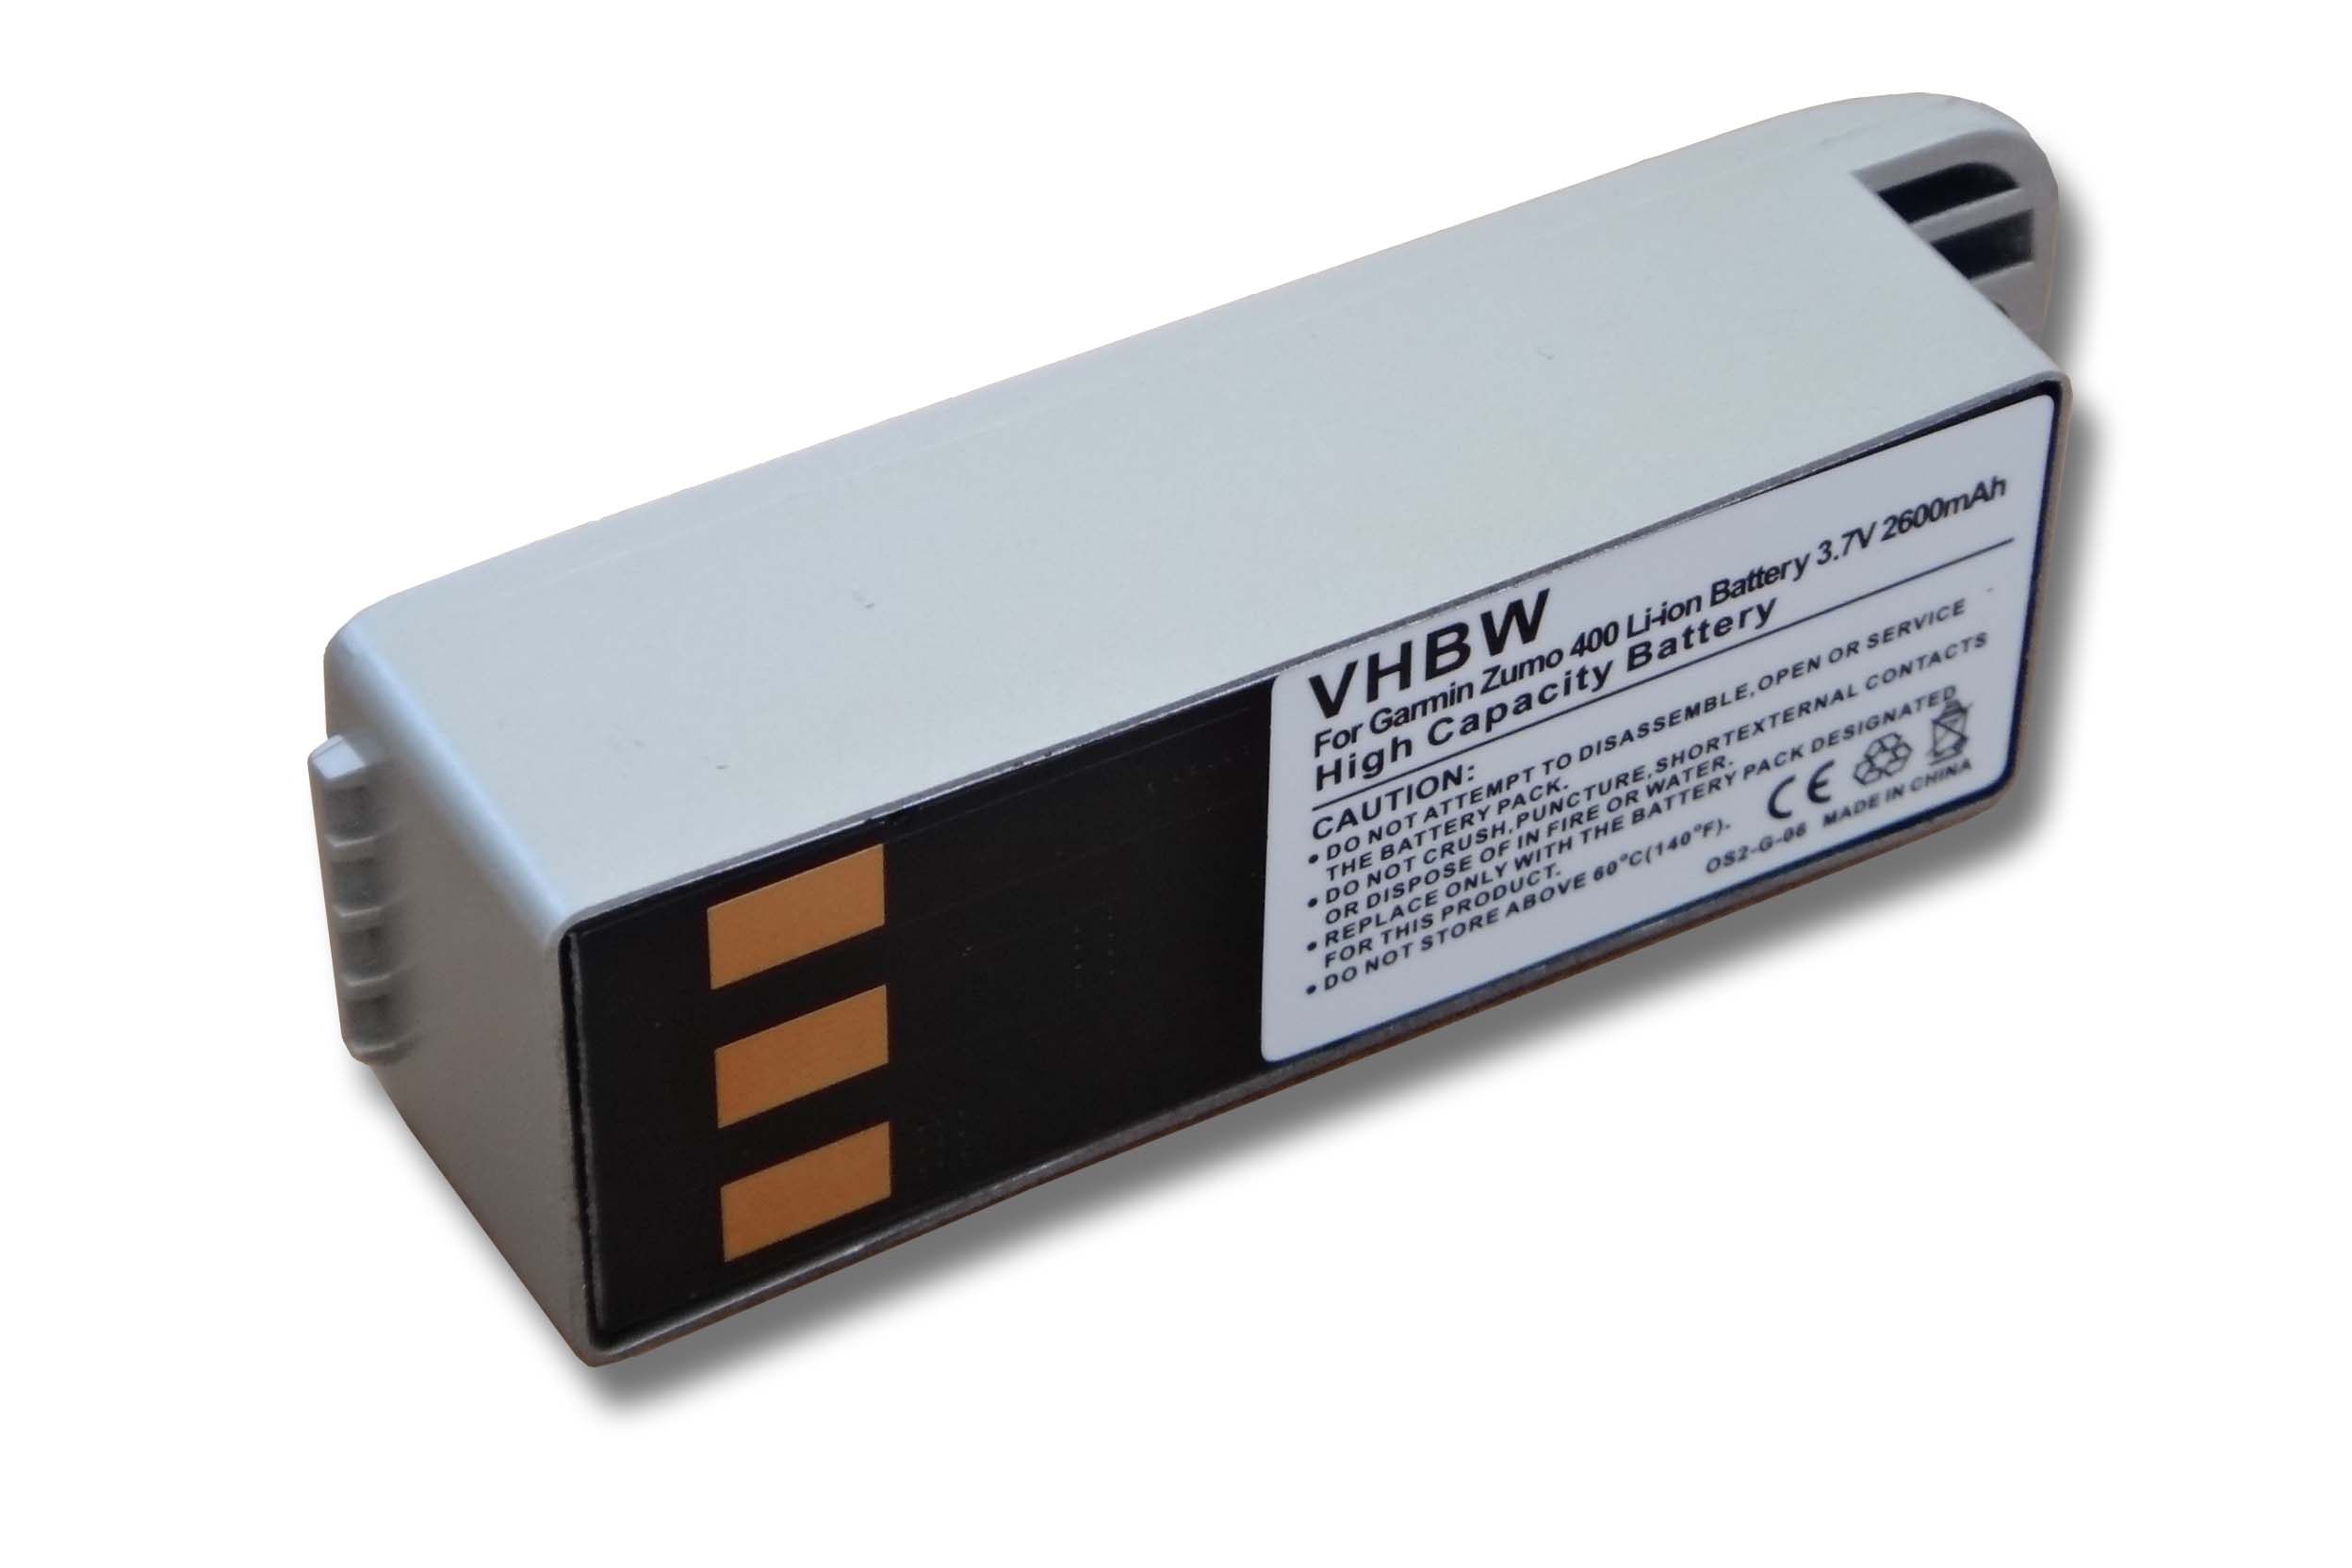 VHBW kompatibel mit Garmin Deluxe 3.7 Navi, - Li-Ion Volt, 450, 2600 500, Zumo 400, Akku 550, 500